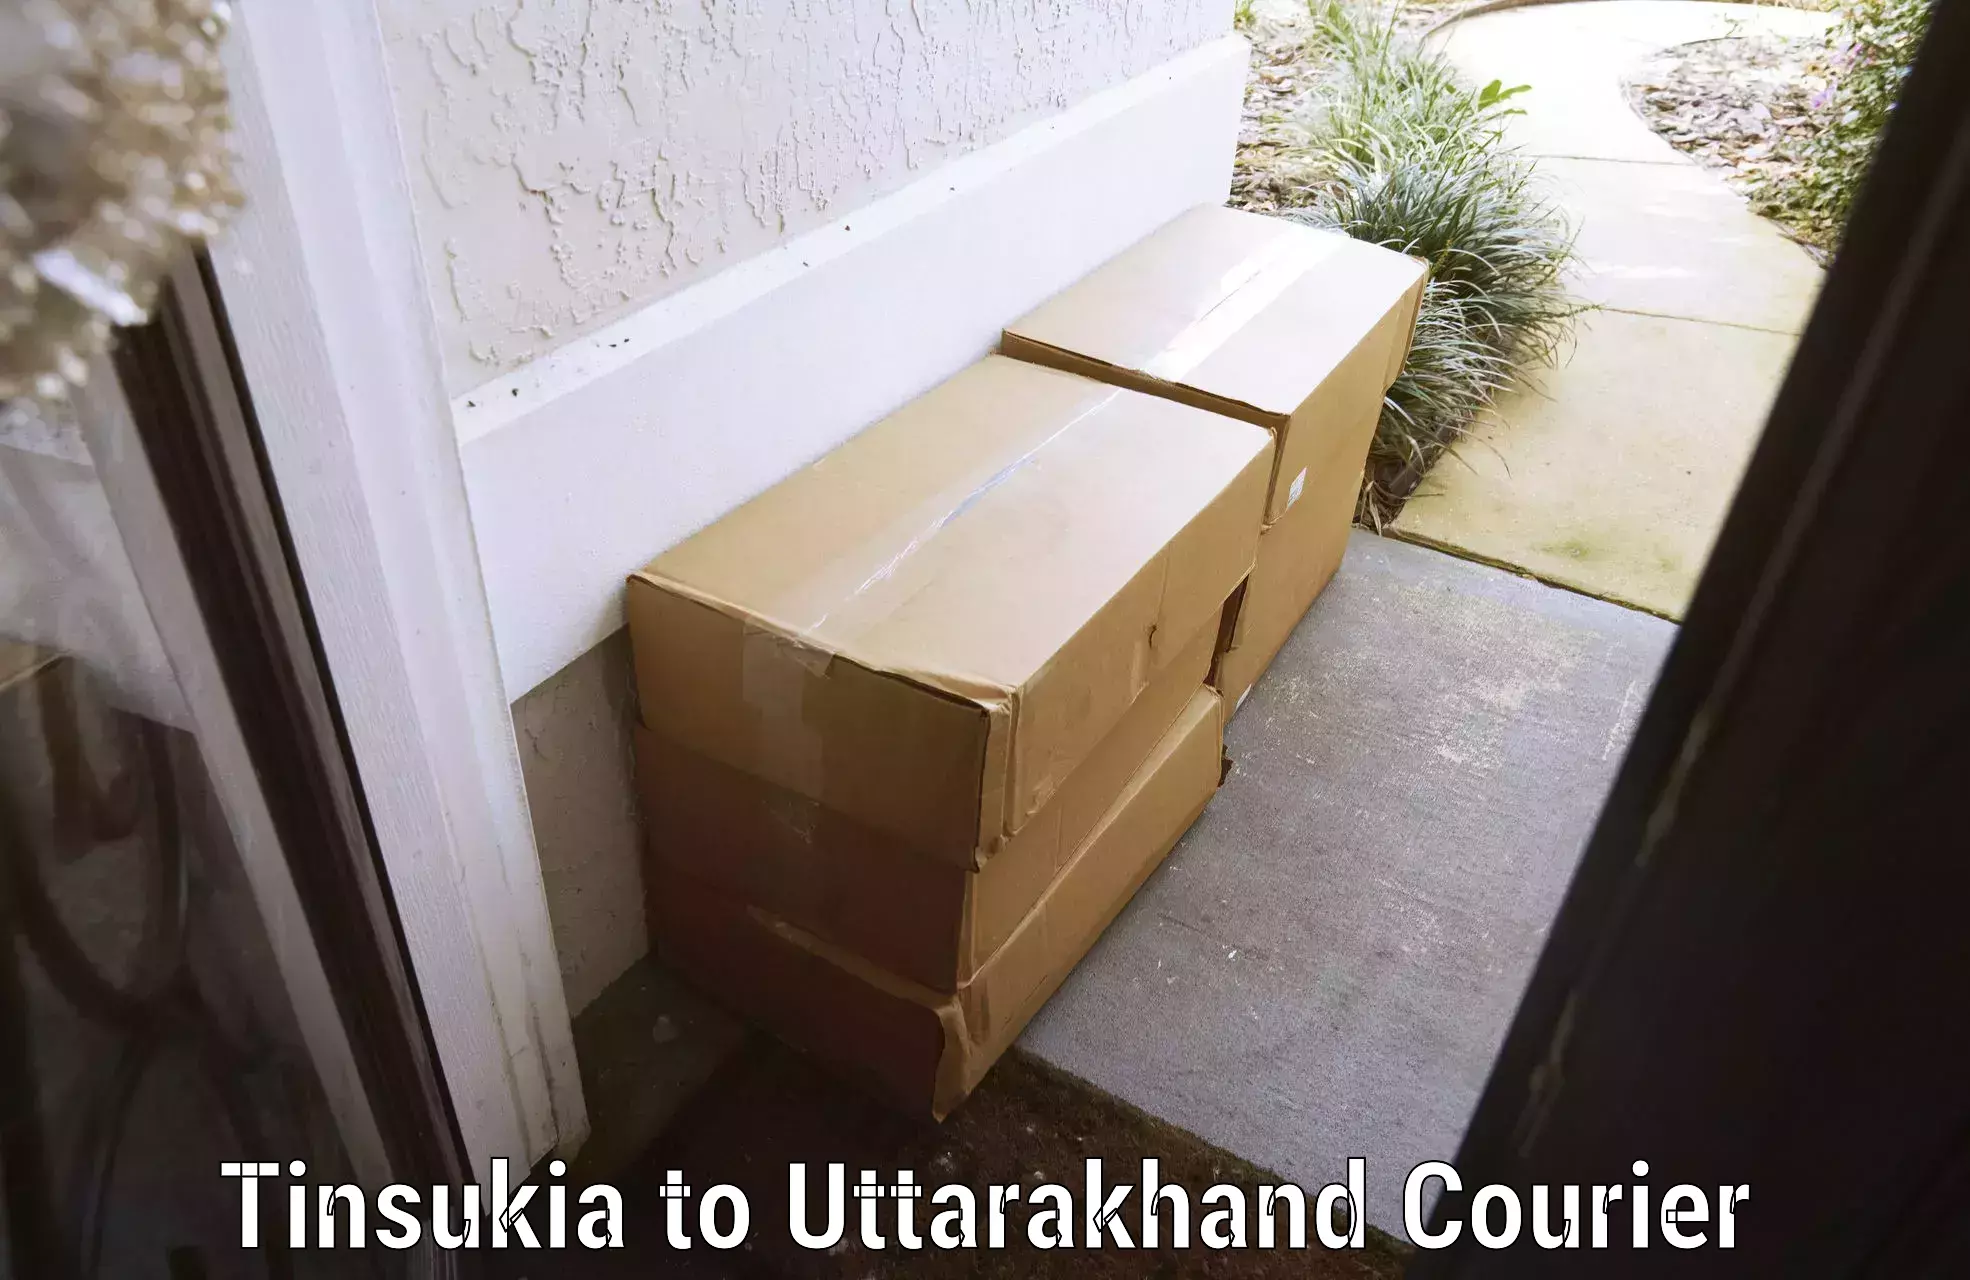 Luggage dispatch service Tinsukia to Kotdwara